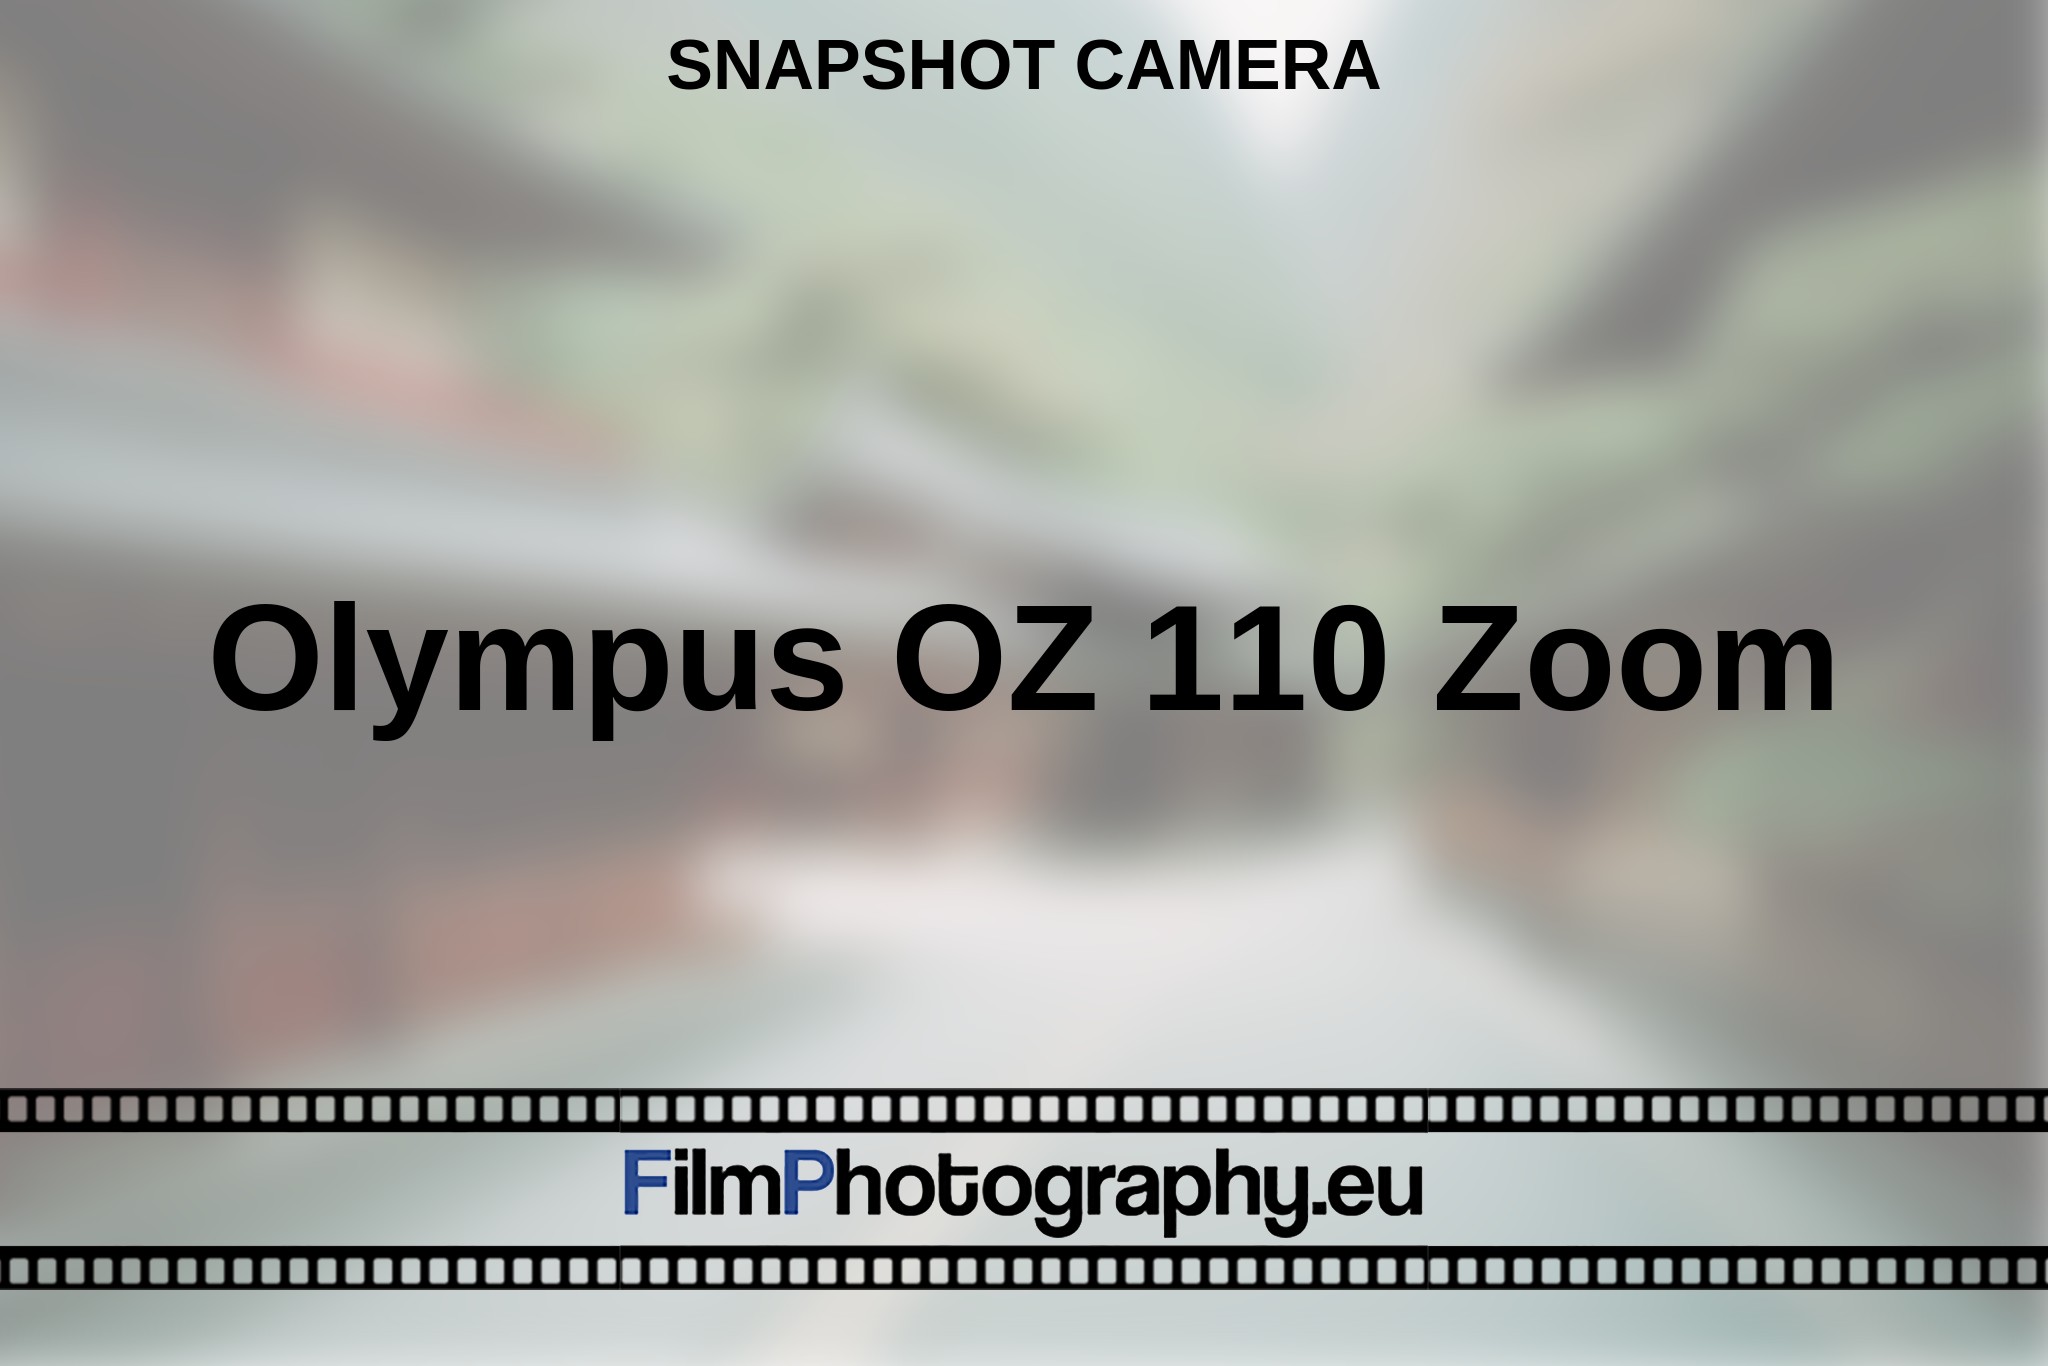 olympus-oz-110-zoom-snapshot-camera-en-bnv.jpg